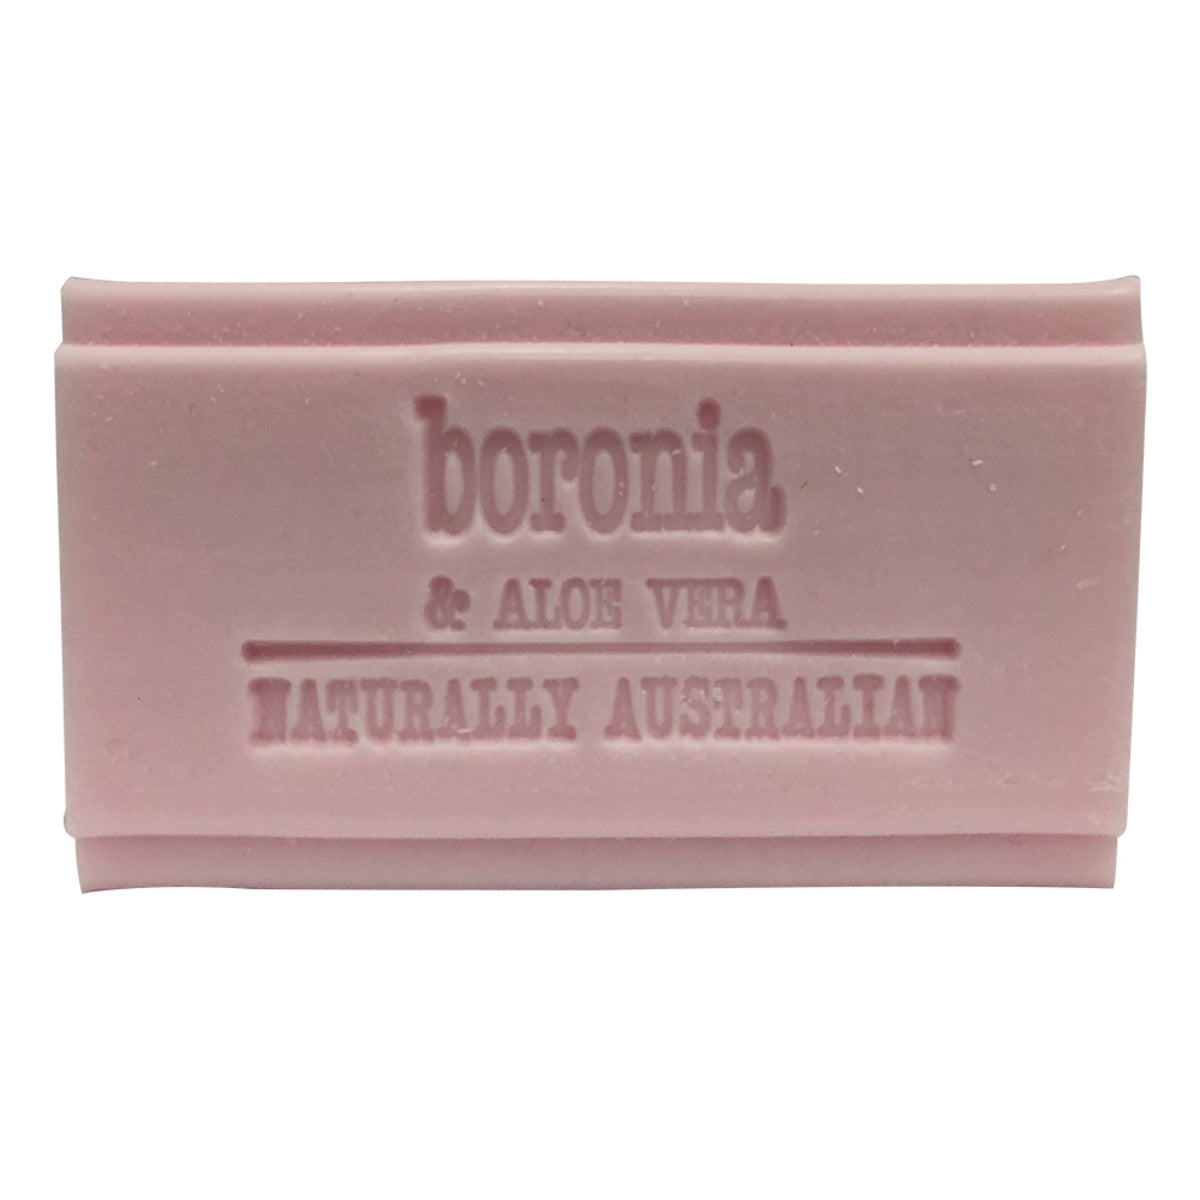 Clover Fields - Boronia and Aloe Vera Soap